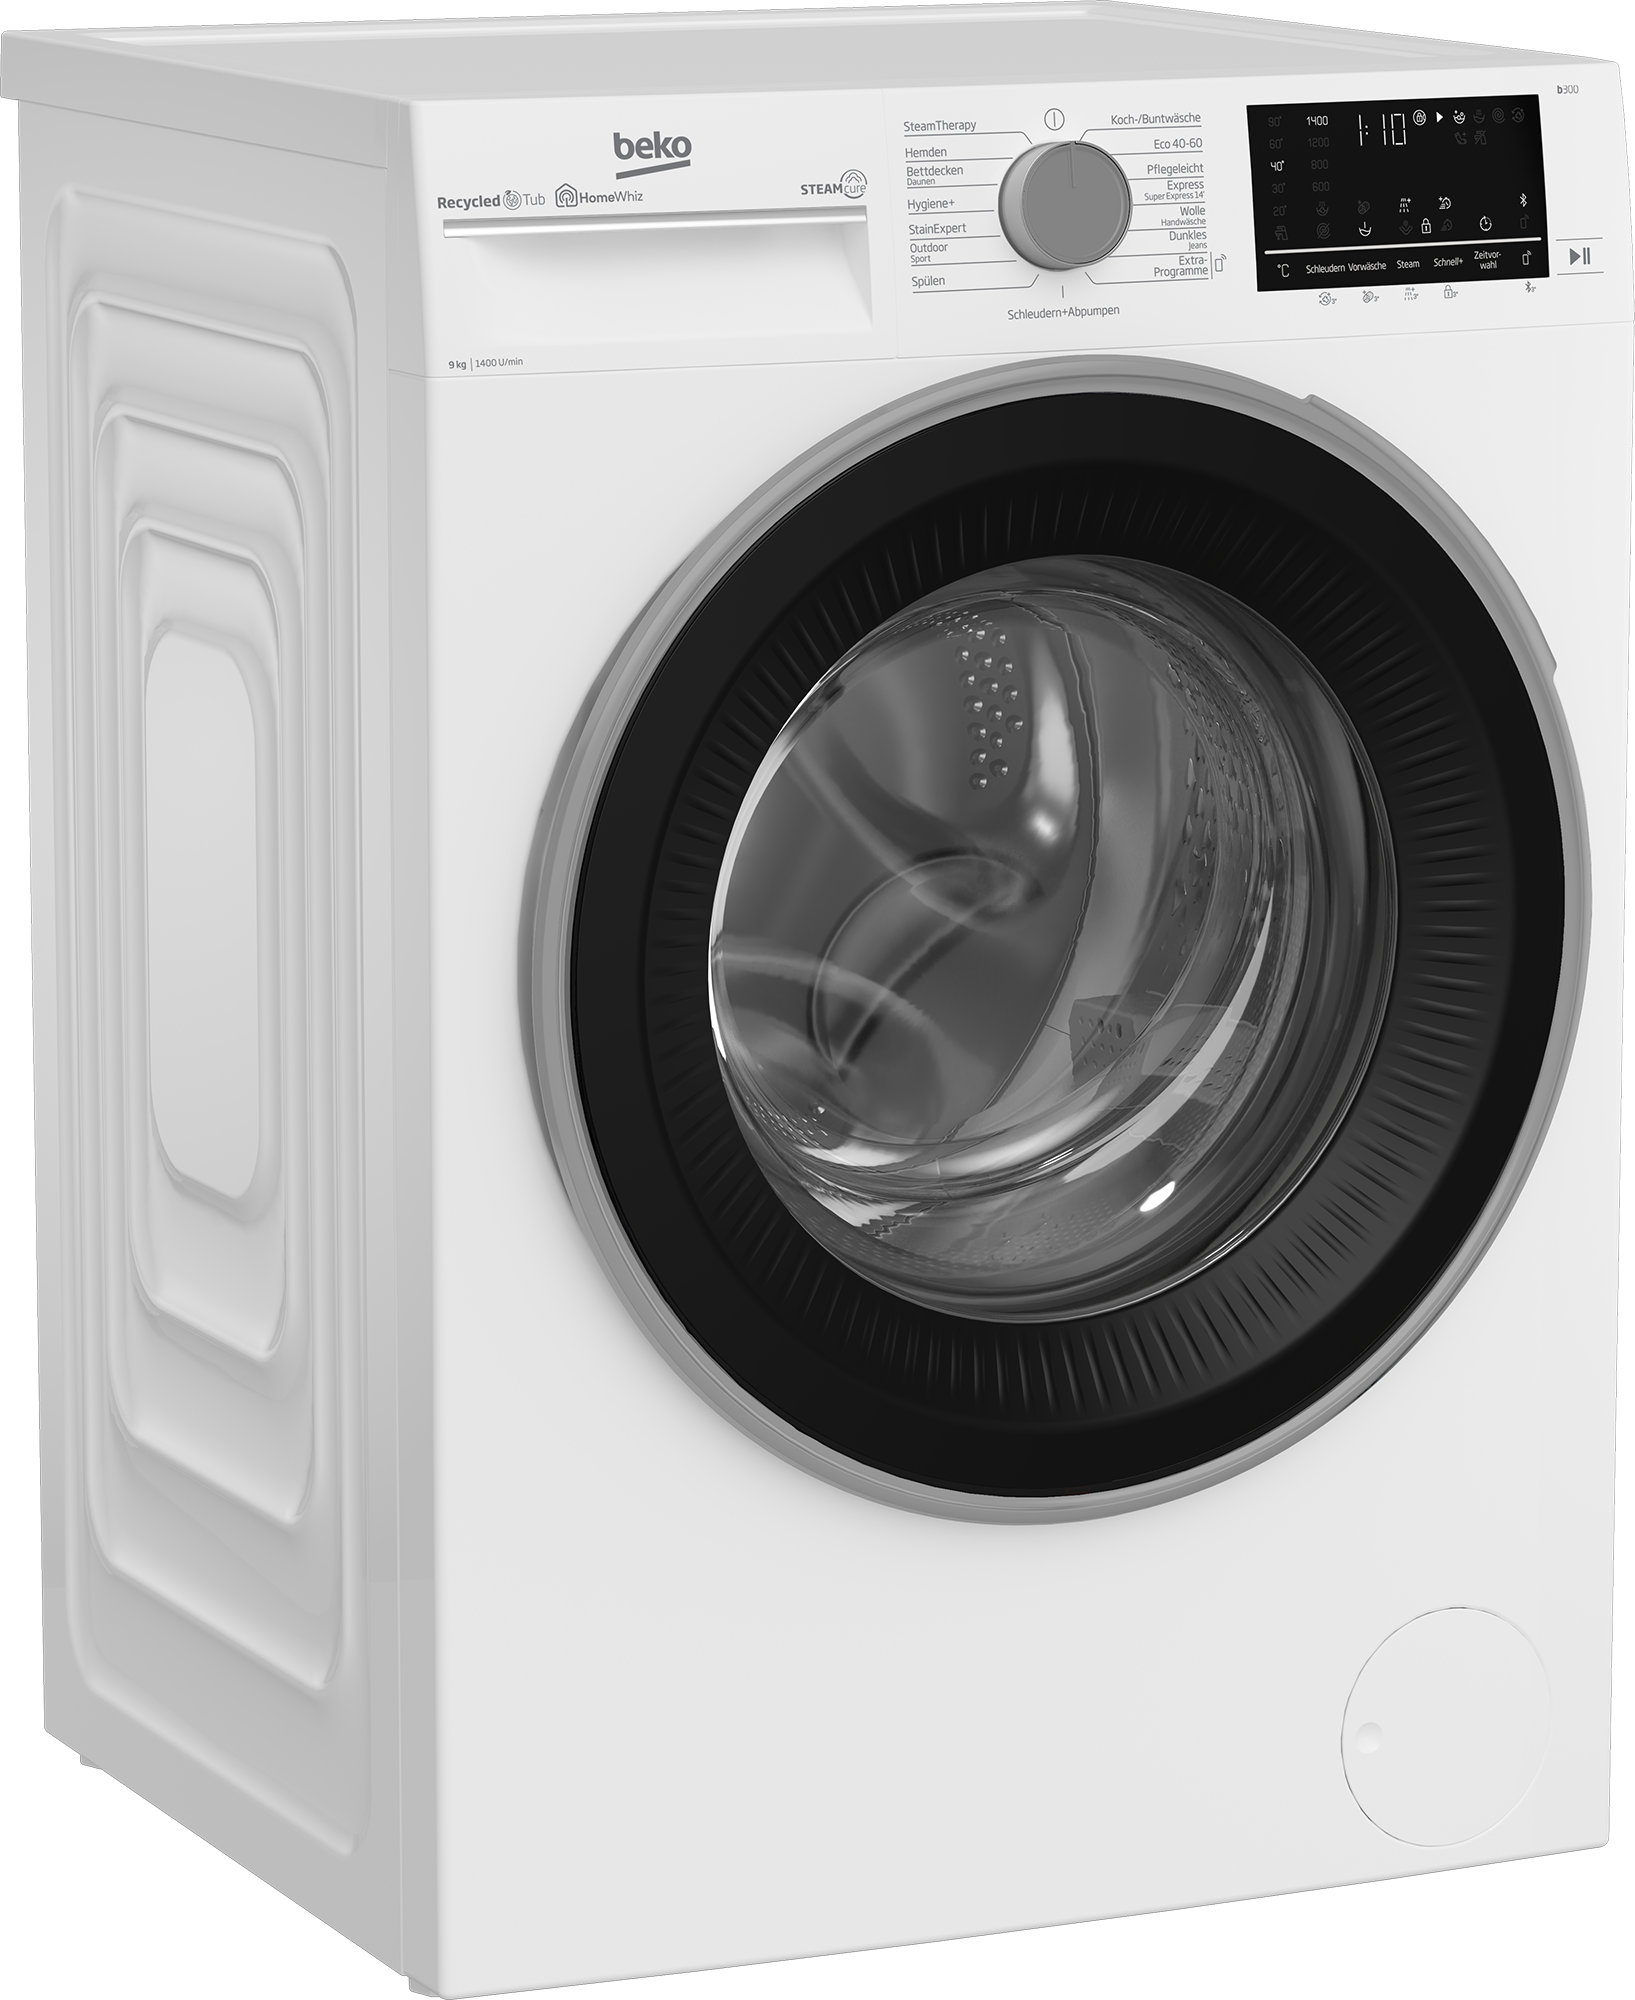 BEKO Waschmaschine, b300, XXL - Jahren kg, SteamCure B3WFU58415W1, Garantie 8 99% allergenfrei 3 mit 1400 U/min